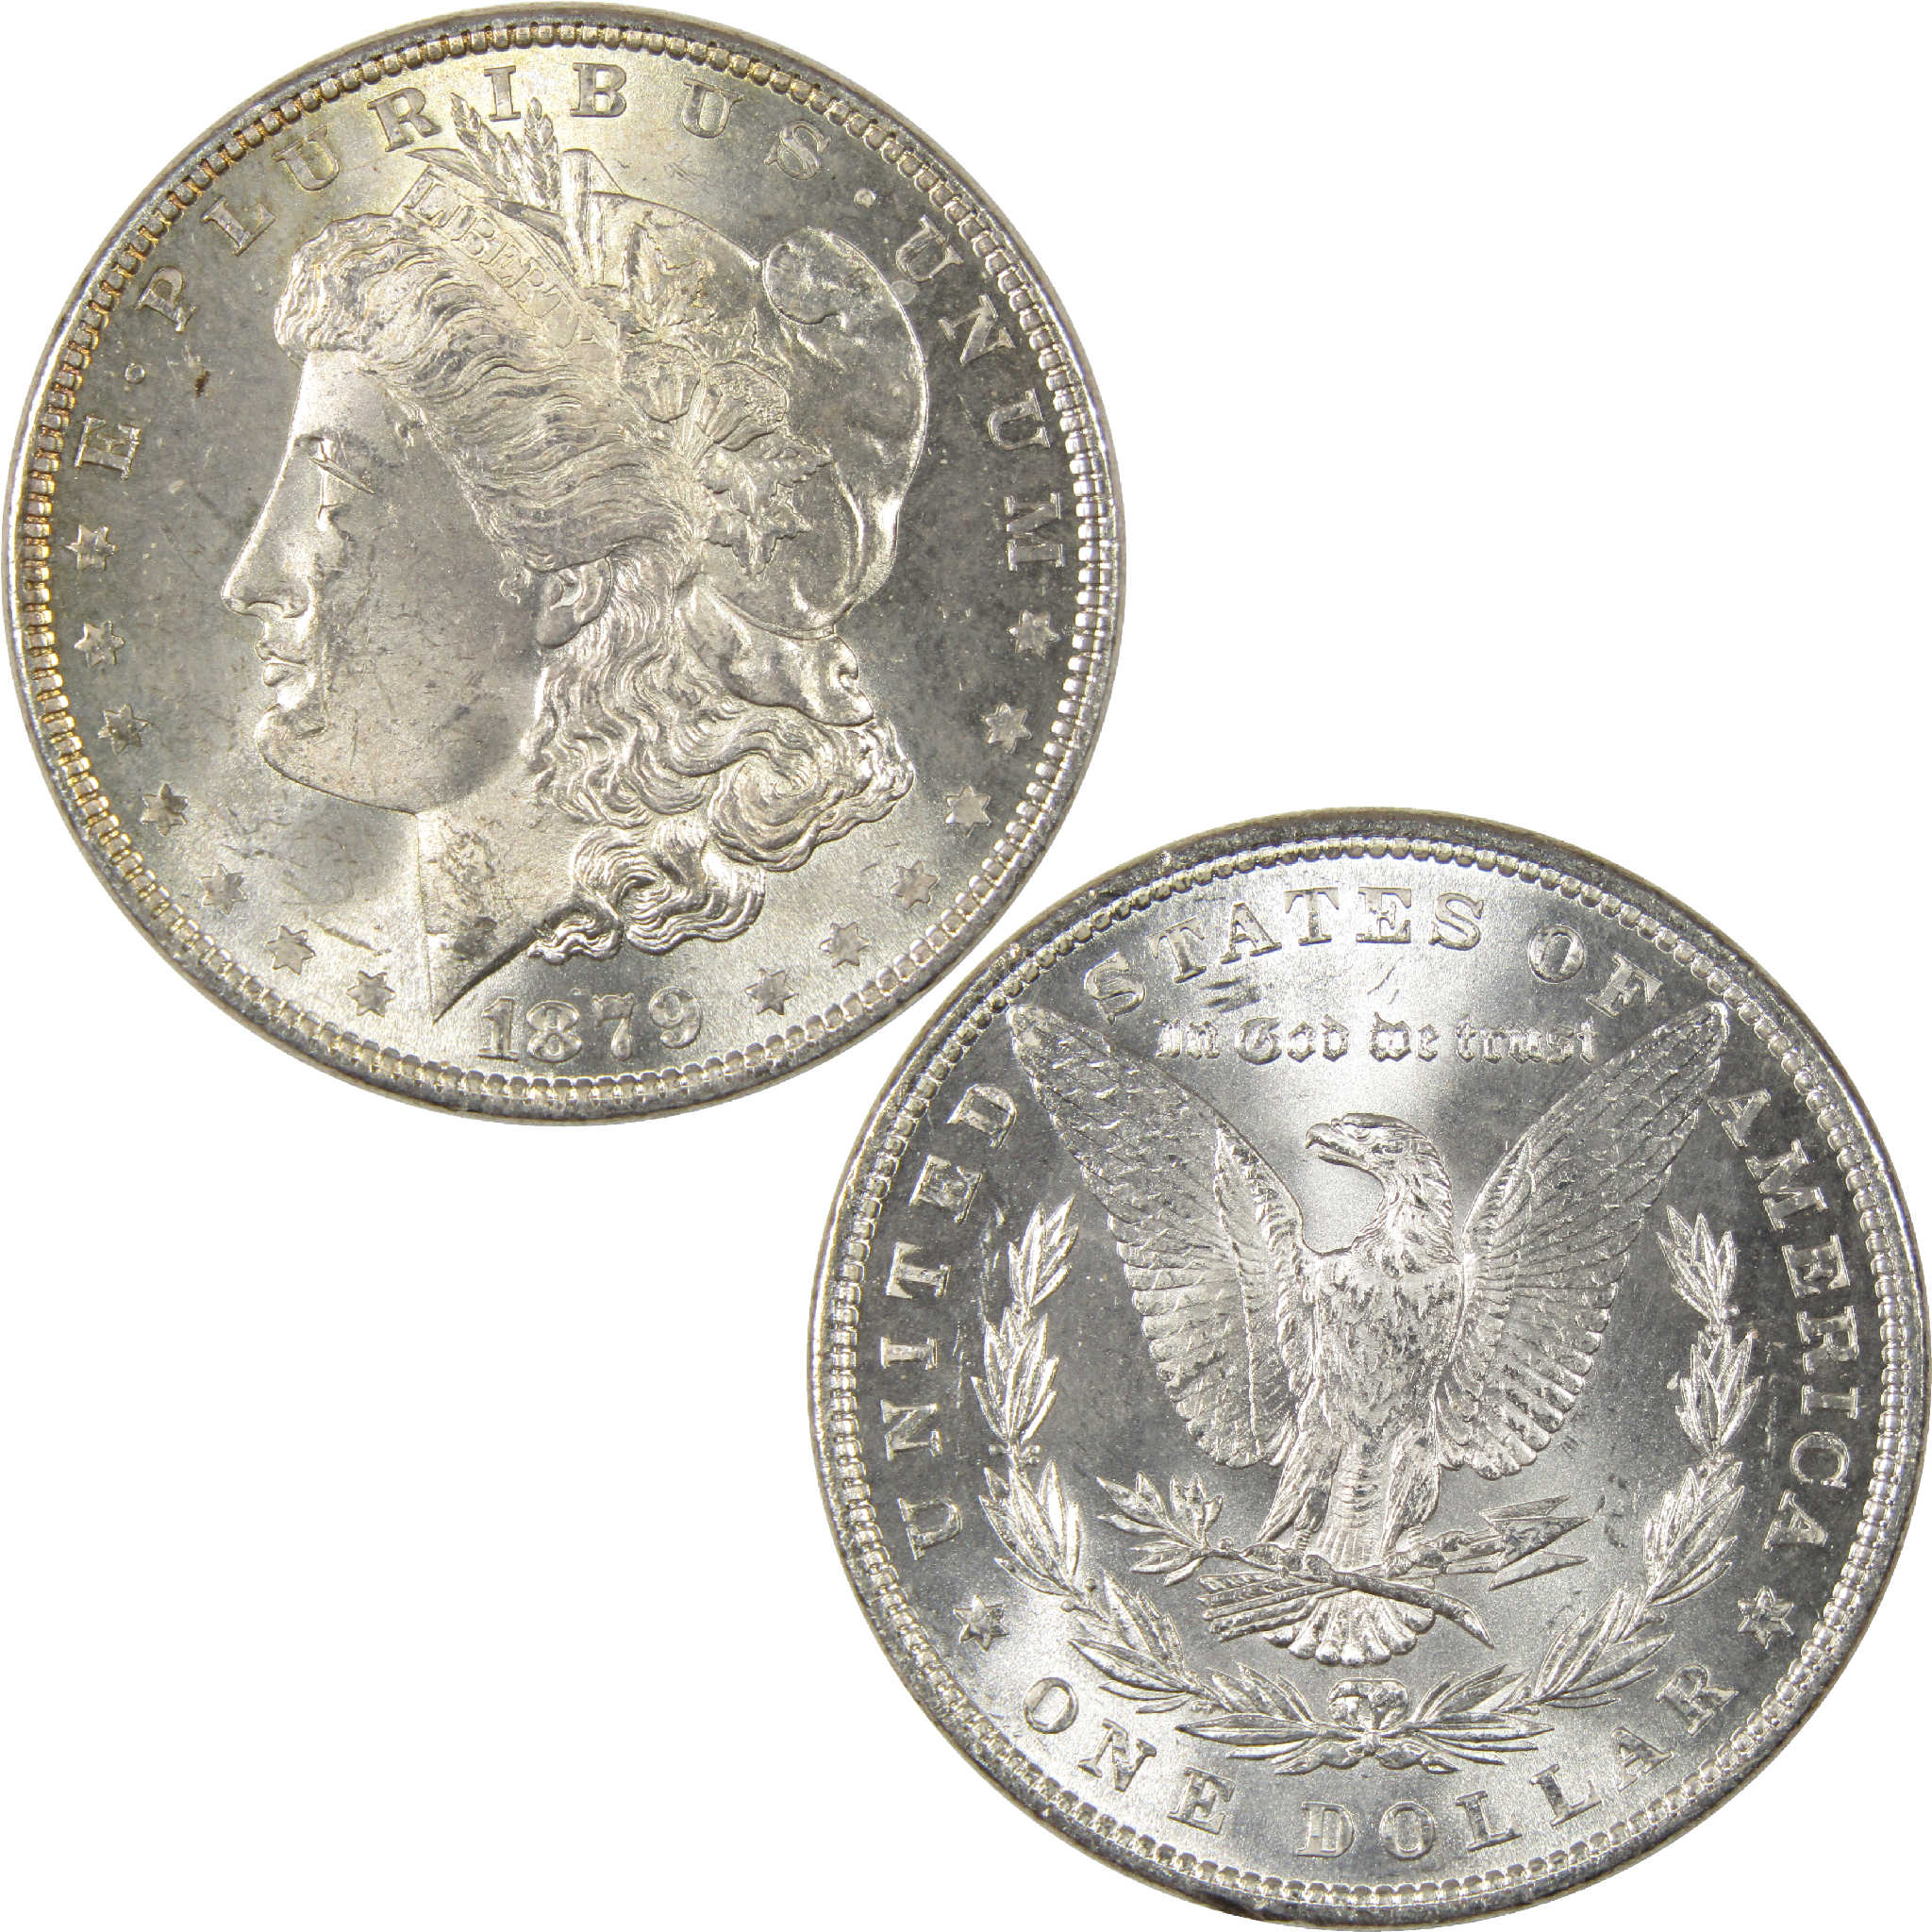 1879 Morgan Dollar Uncirculated Silver $1 Coin - Morgan coin - Morgan silver dollar - Morgan silver dollar for sale - Profile Coins &amp; Collectibles